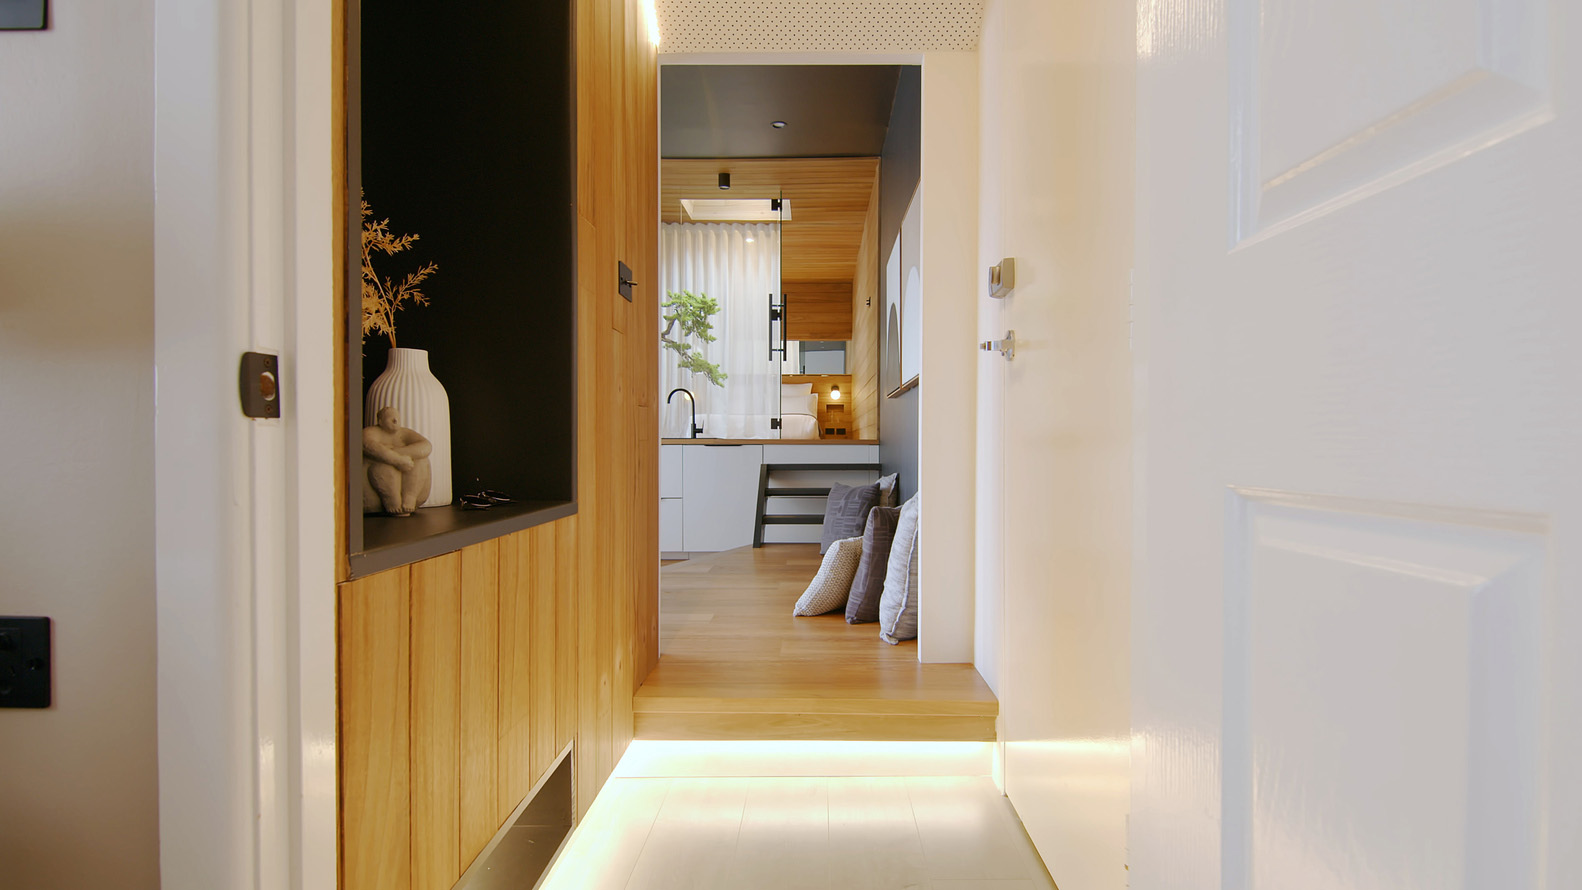 公寓设计,公寓设计案例,Dform Project,50㎡,澳大利亚·曼利,设计师的公寓,小公寓设计案例,公寓装修,日式小旅馆,度假公寓,原木色